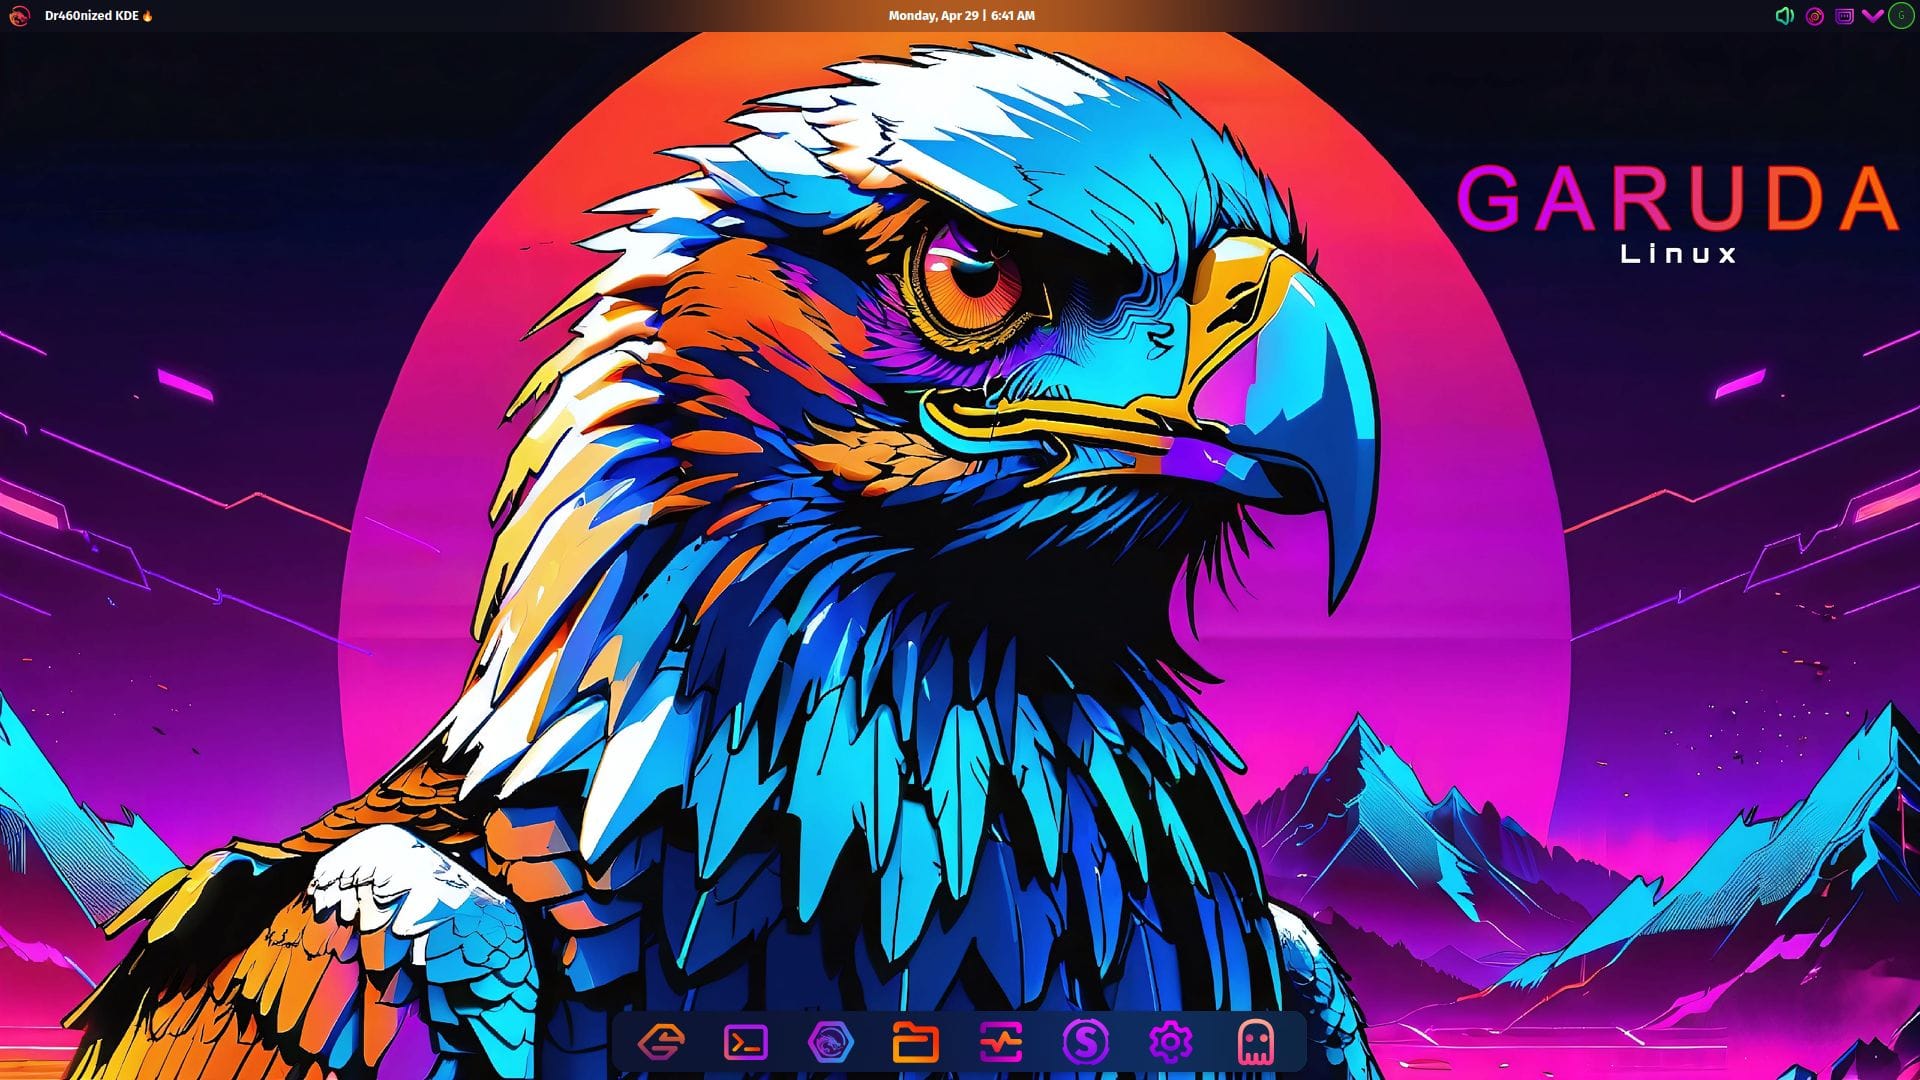 Garuda Linux's Big Release, Code-named “Bird of Prey” is Here!